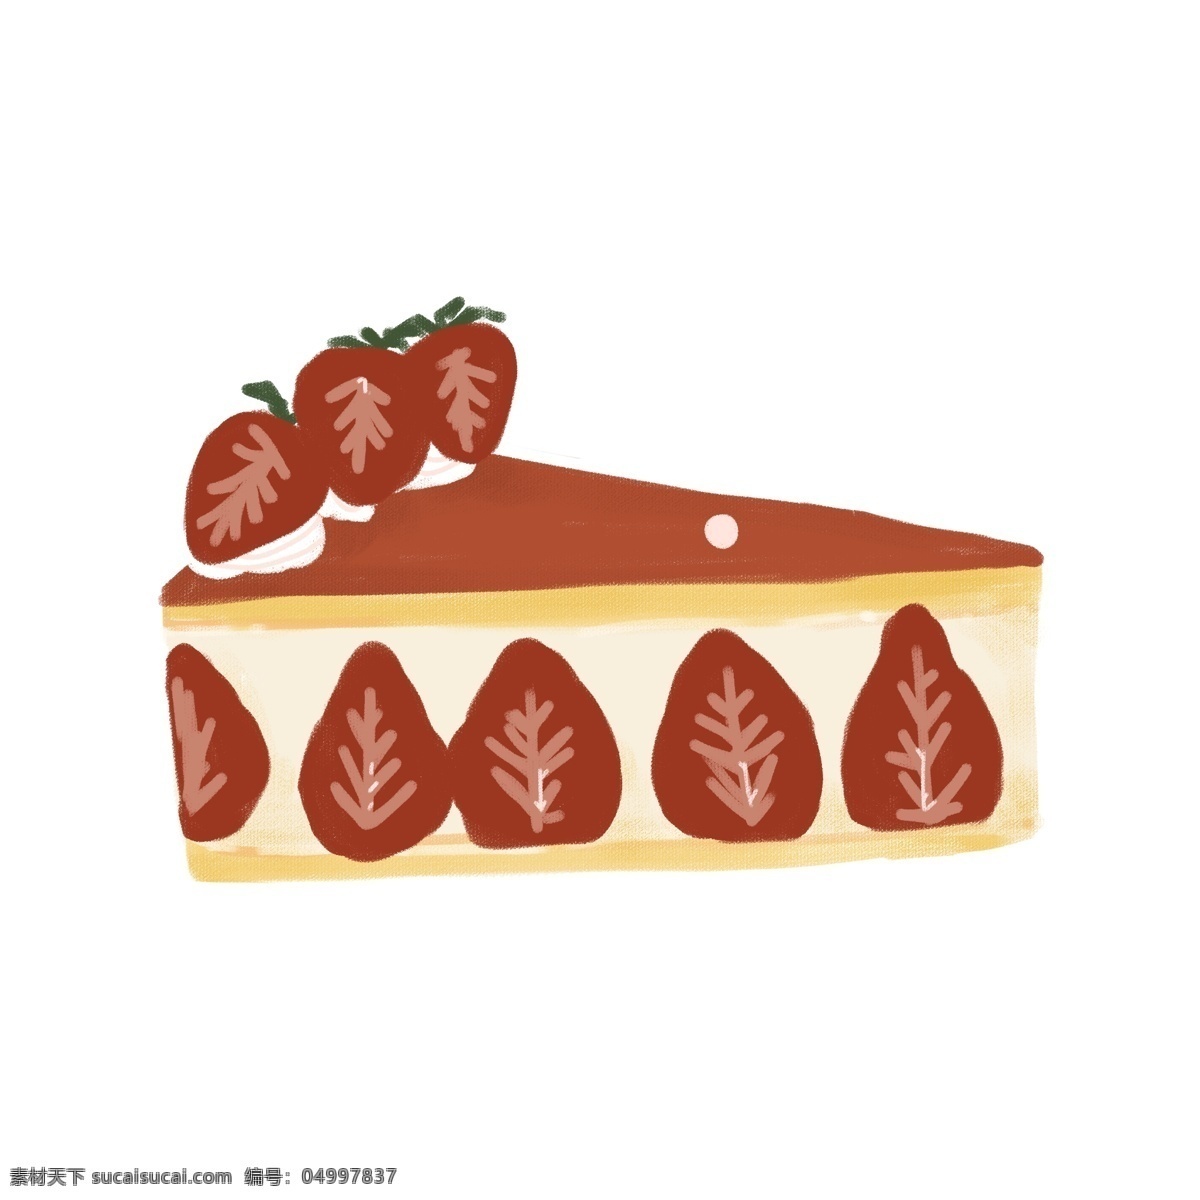 草莓 夹心 巧克力 酱 手绘 蛋糕 草莓蛋糕 手绘草莓蛋糕 芝士蛋糕 奶油 芝士夹心 小清新 可爱手绘 手绘蛋糕